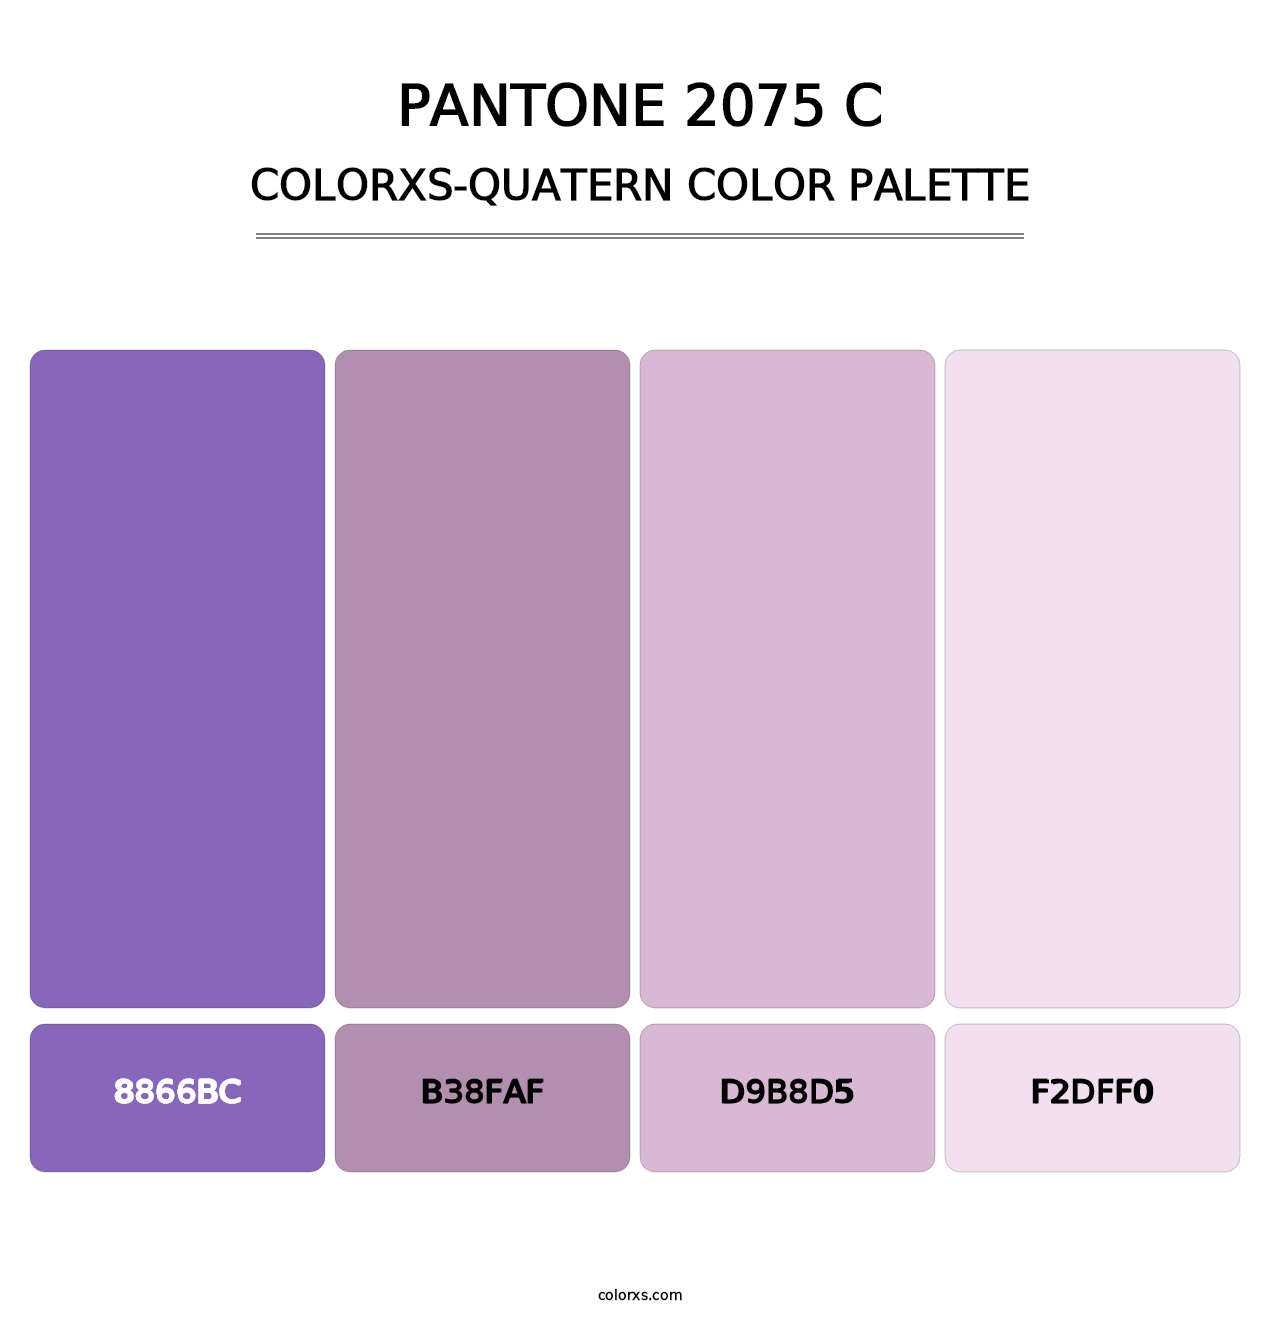 PANTONE 2075 C - Colorxs Quatern Palette